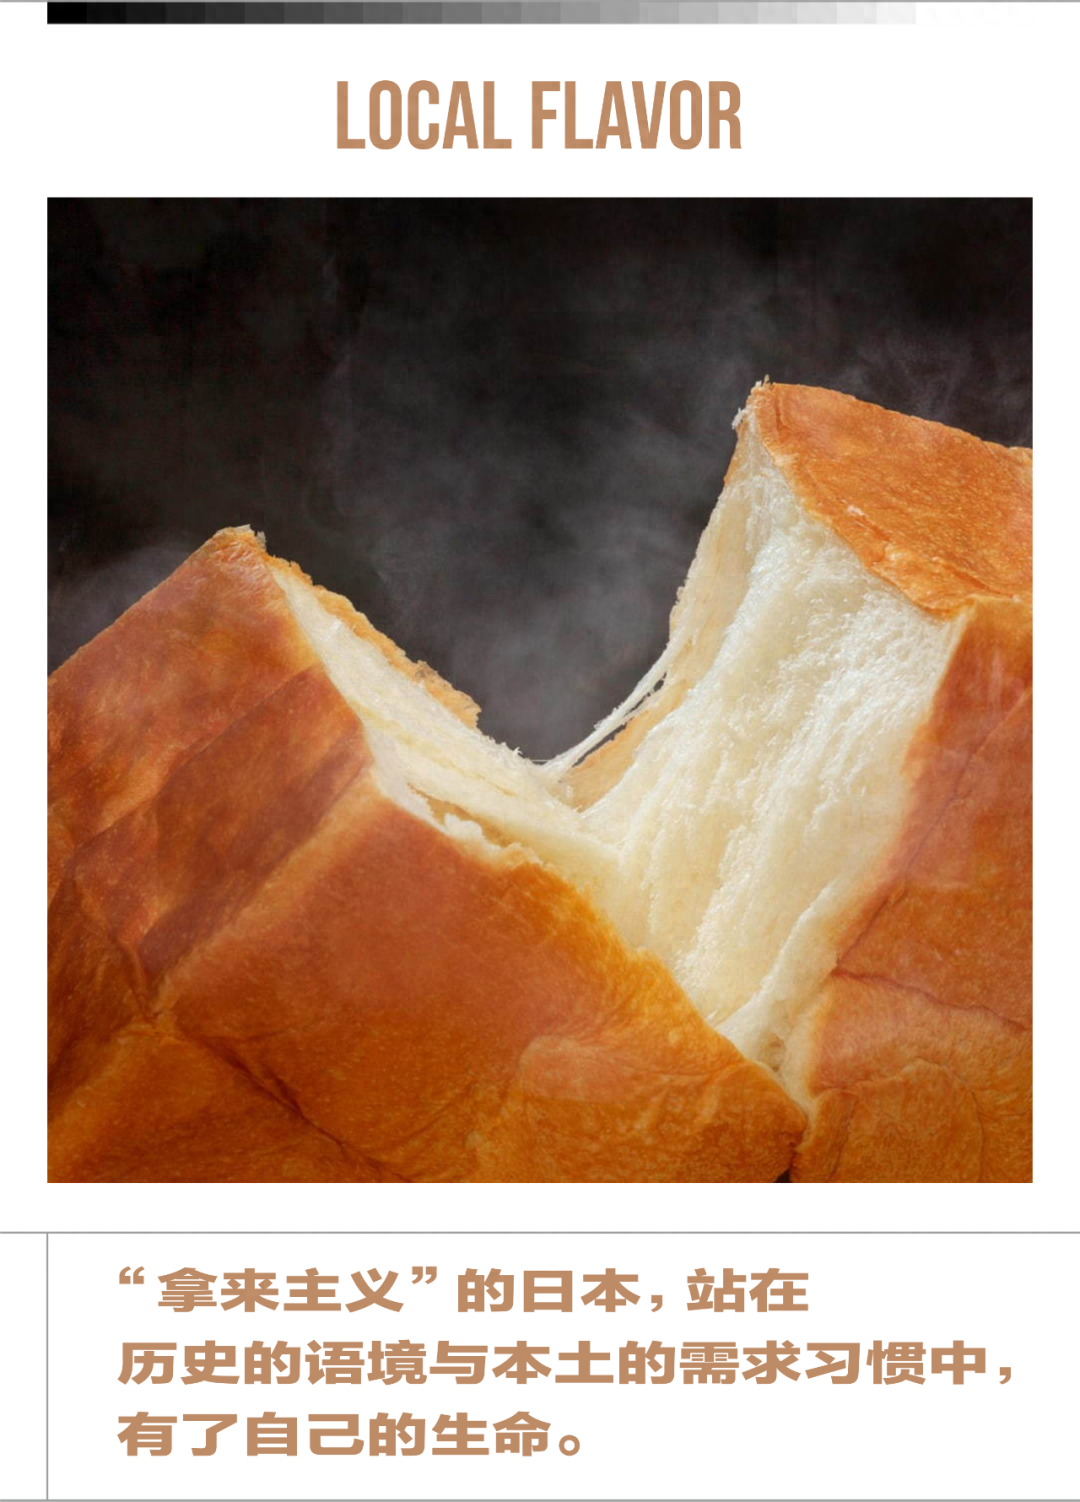 2008 年，一部贺岁档电影《非诚勿扰》揭开了日本北海道的美丽面纱。12 年后在中国烘焙界，「北海道」仍是一个闪闪发光的词汇。「北海道吐司」就是比「牛奶吐司」更具带货号召力